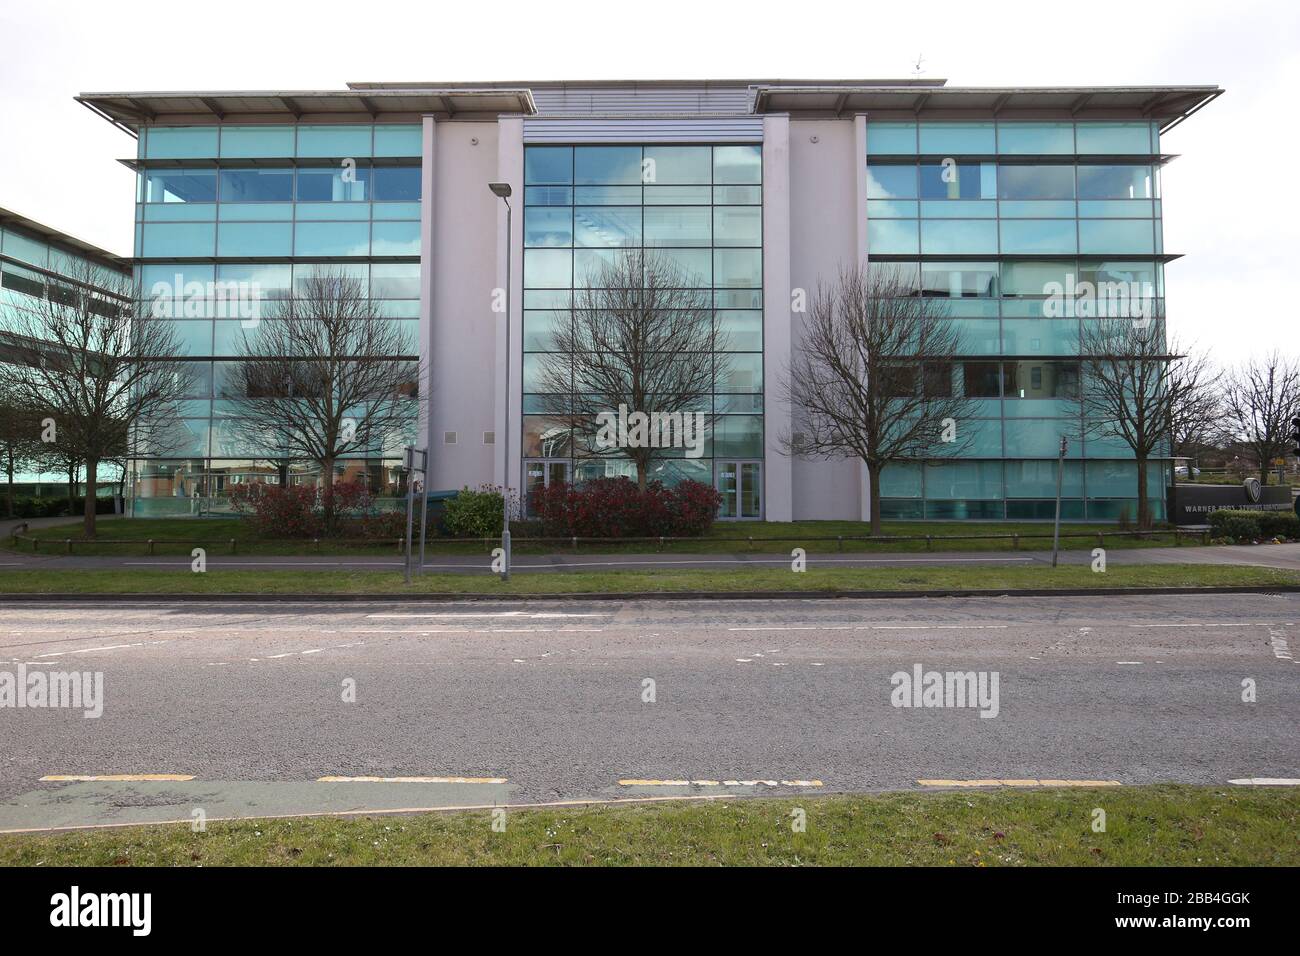 La sede centrale di BrightHouse, ospitata negli studi Warner Brothers di Watford, Hertfordshire, in quanto l'operatore di noleggio ha confermato di essere caduto in amministrazione con più di 2.400 posti di lavoro a rischio. Foto Stock